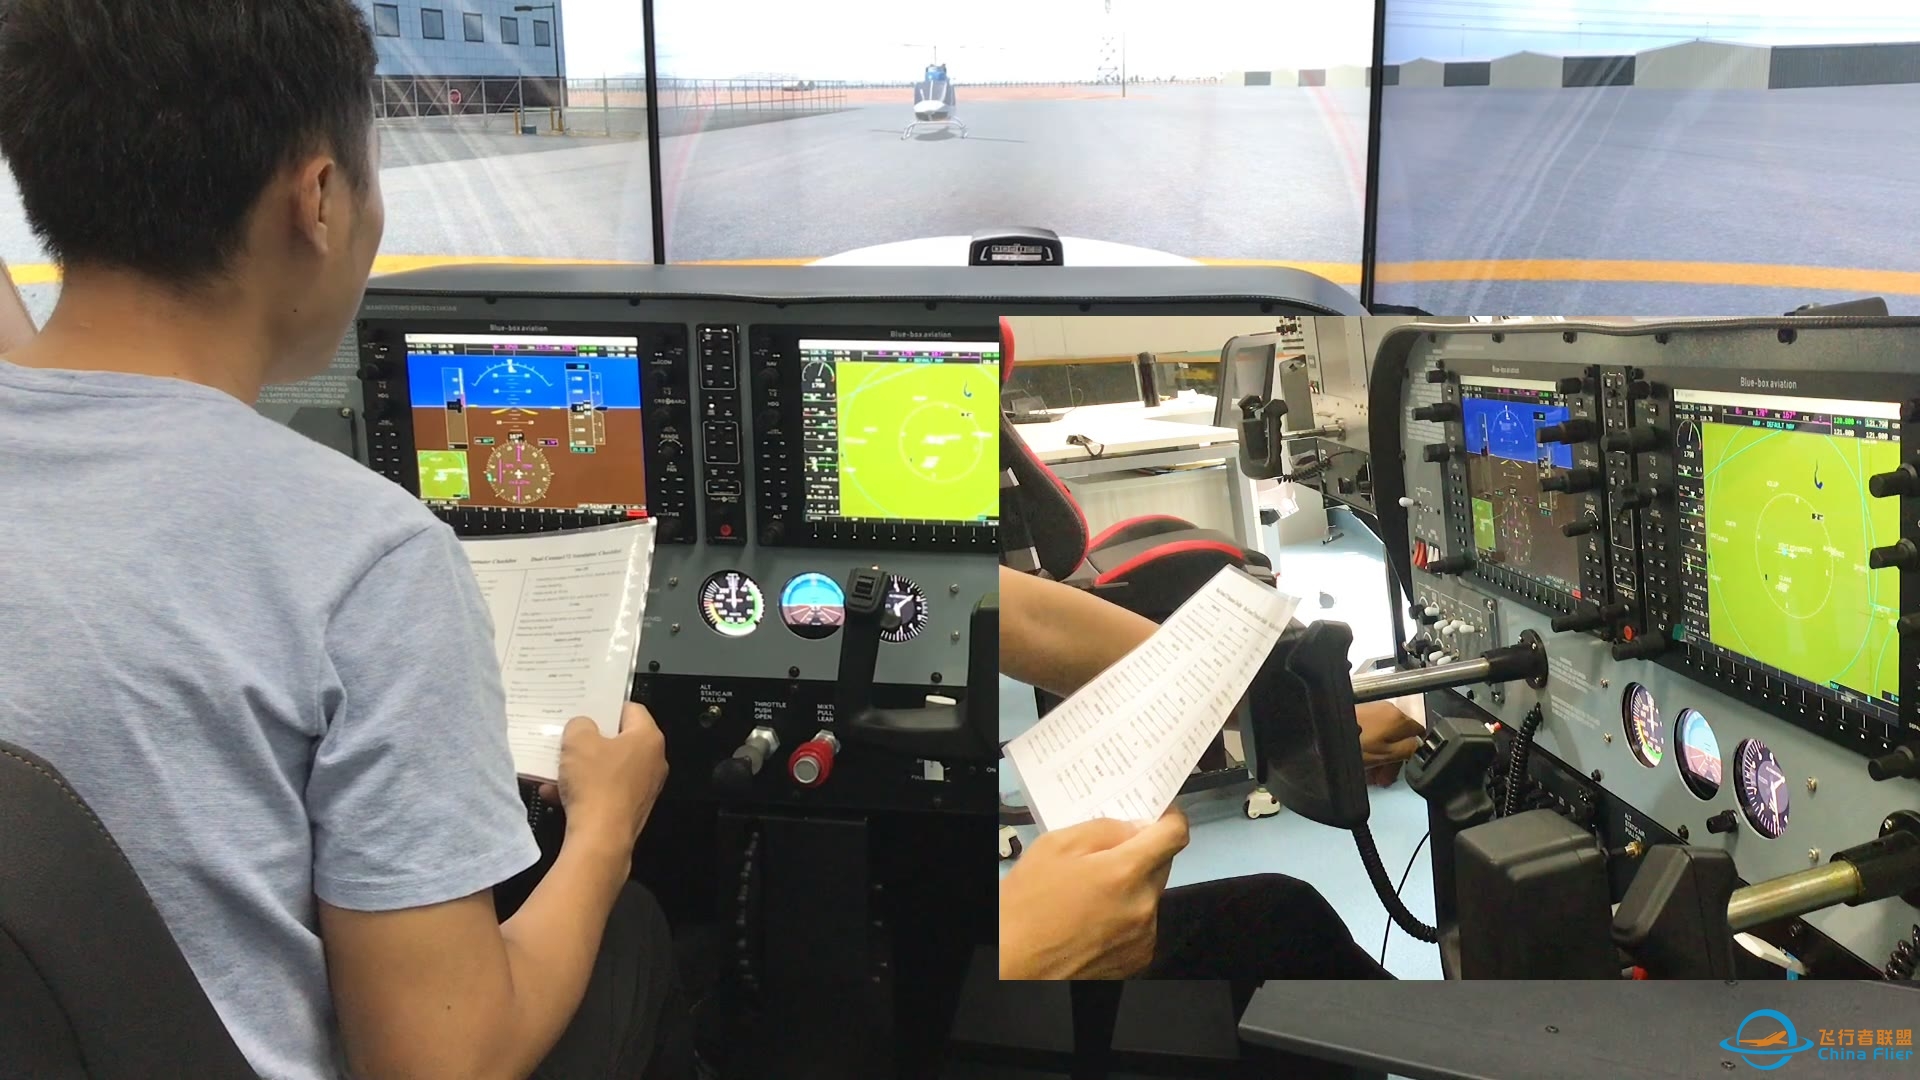 简单的飞行模拟线路介绍，基于Cessna172以及checklist。-7308 